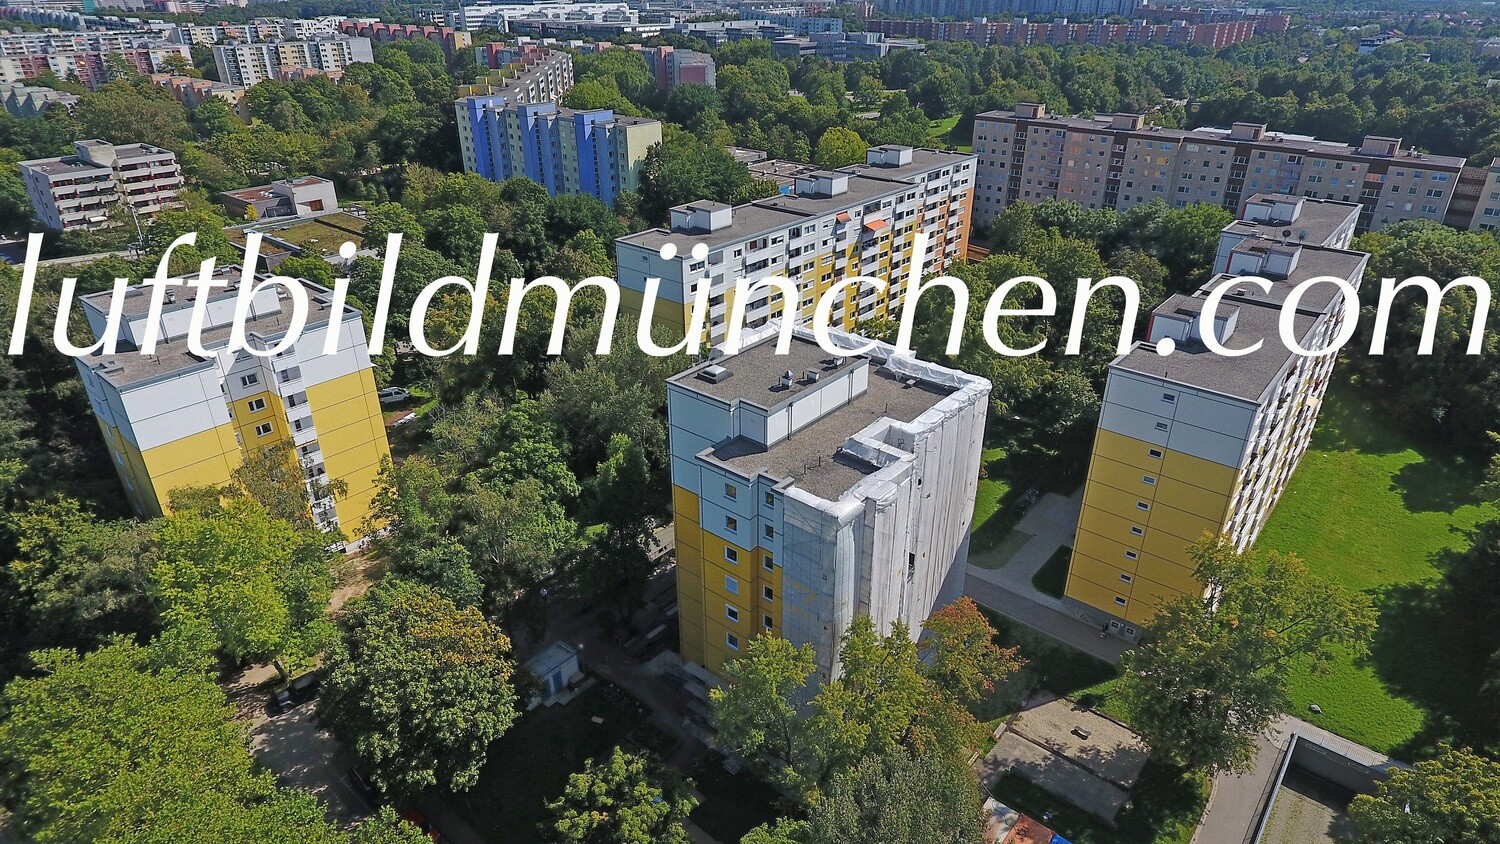 München, Bayern, Wohngebiet, Wohnung, Haus, Neuperlach, Hochhaus, Luftbild, Luftaufnahme, Foto von oben, Drohnenfoto, Drohne,